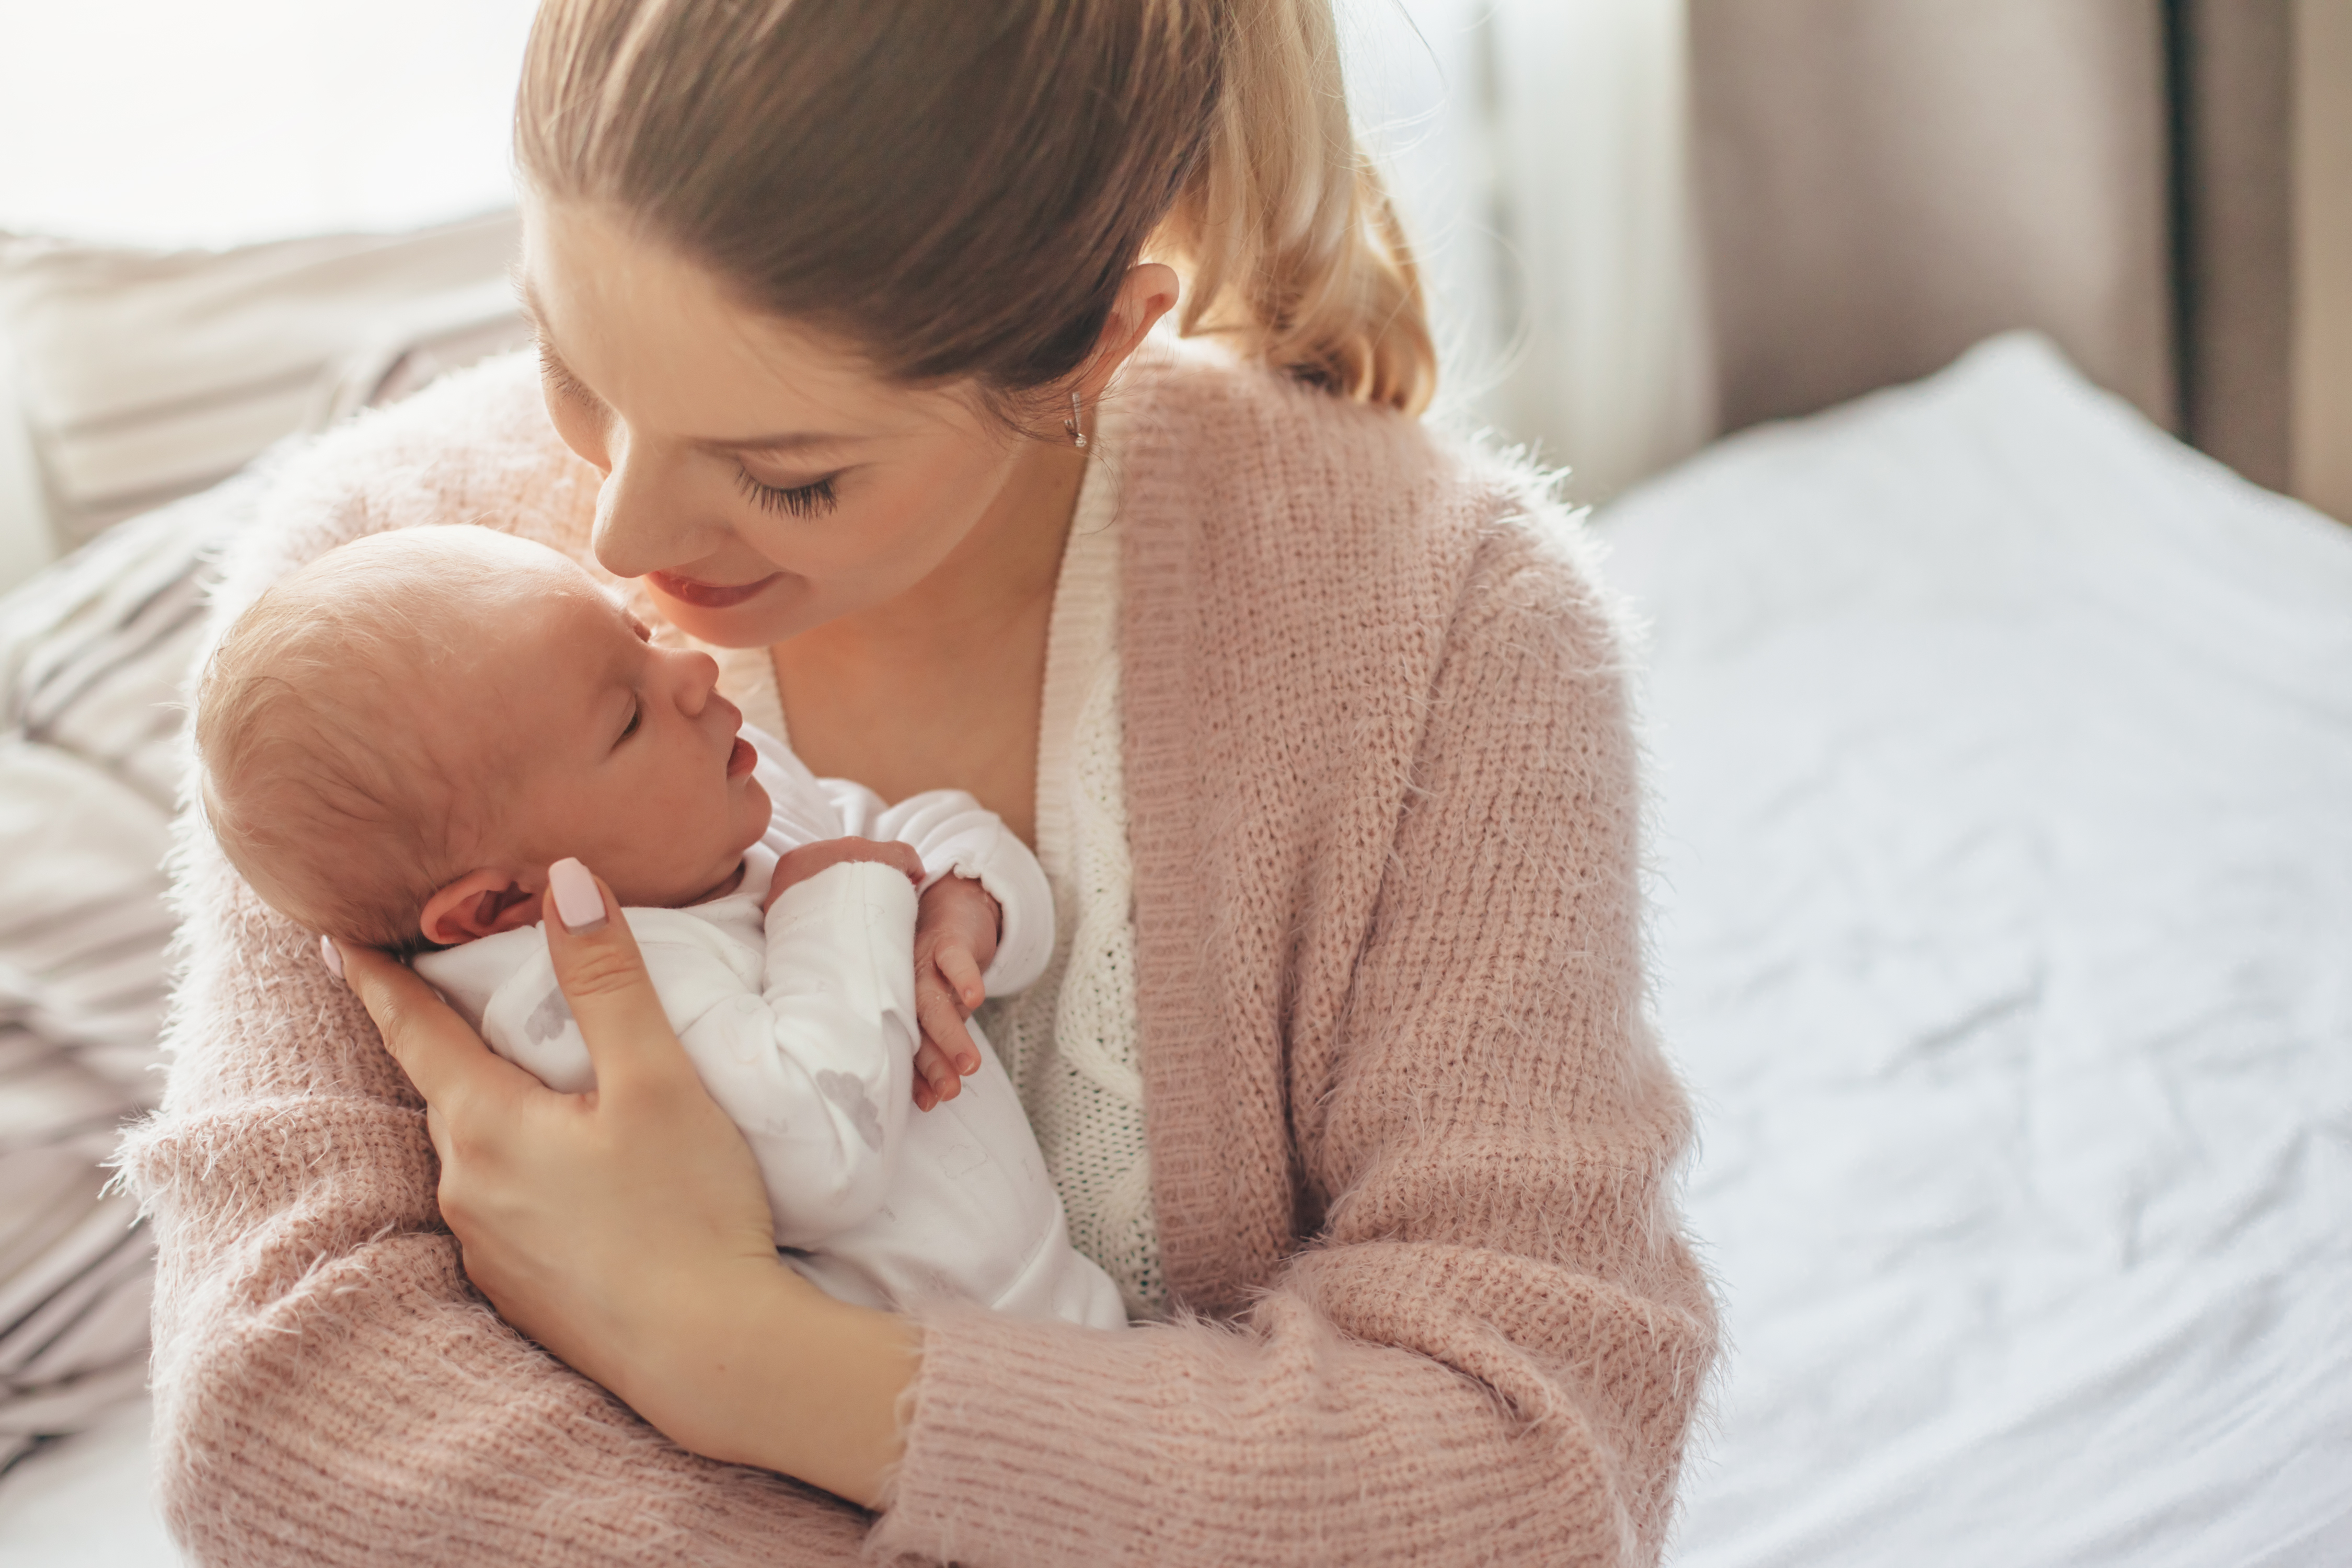 Mutter hält ihr neugeborenes Baby | Quelle: Shutterstock